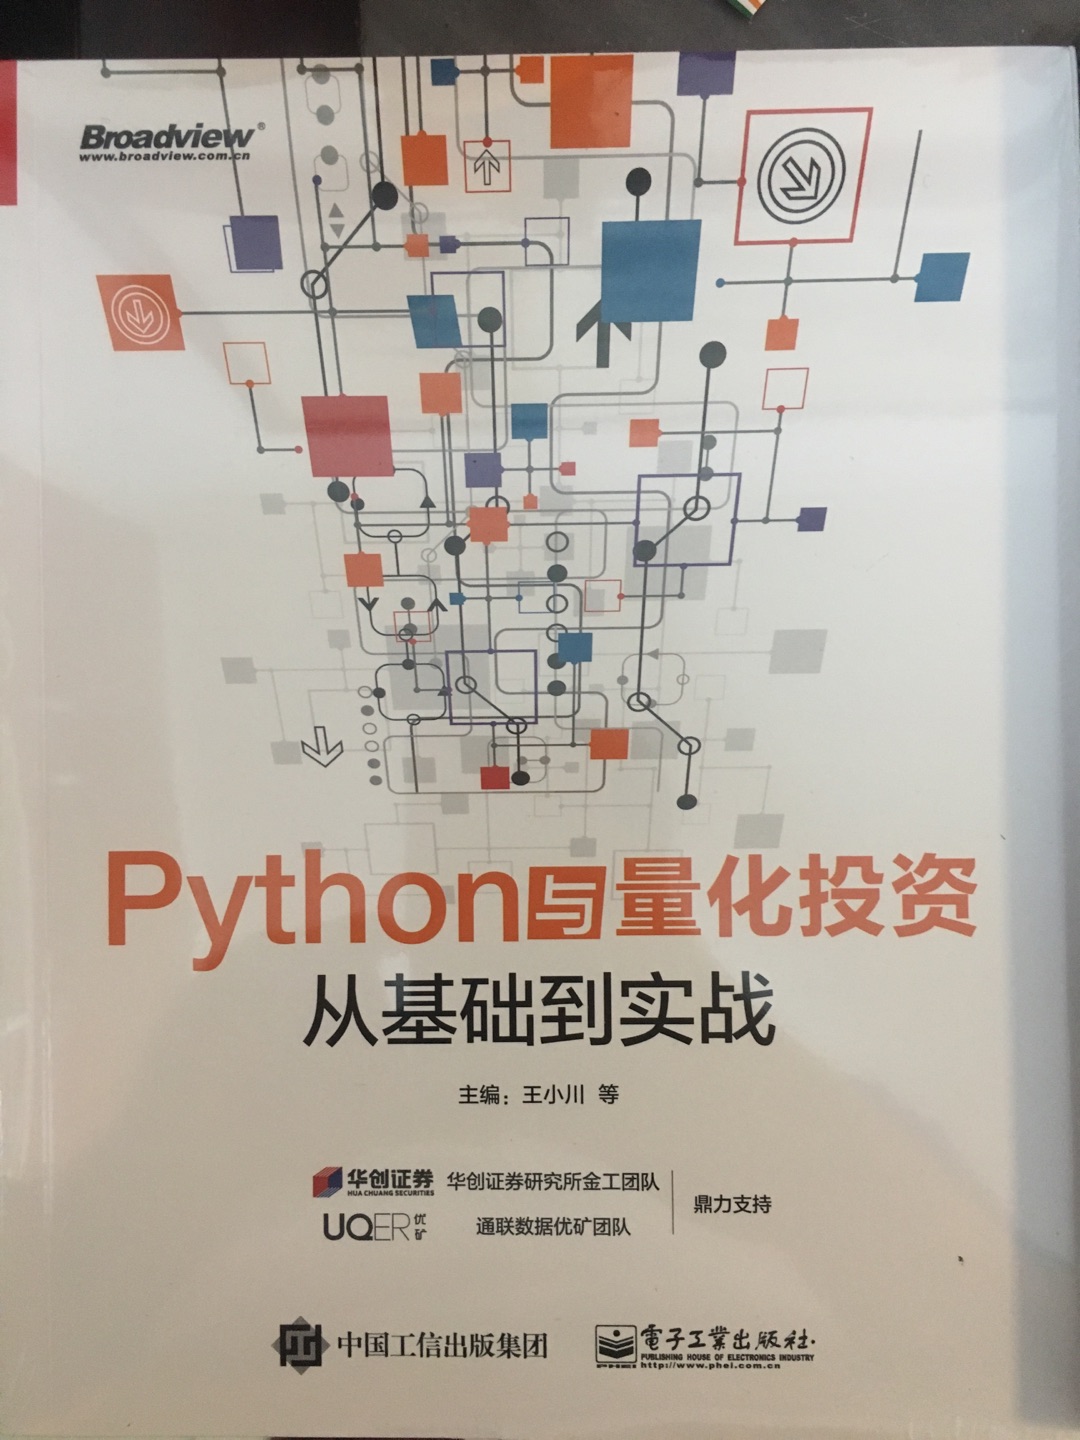 学Python就是要用到实处，书籍包装得很好，还有保护膜。